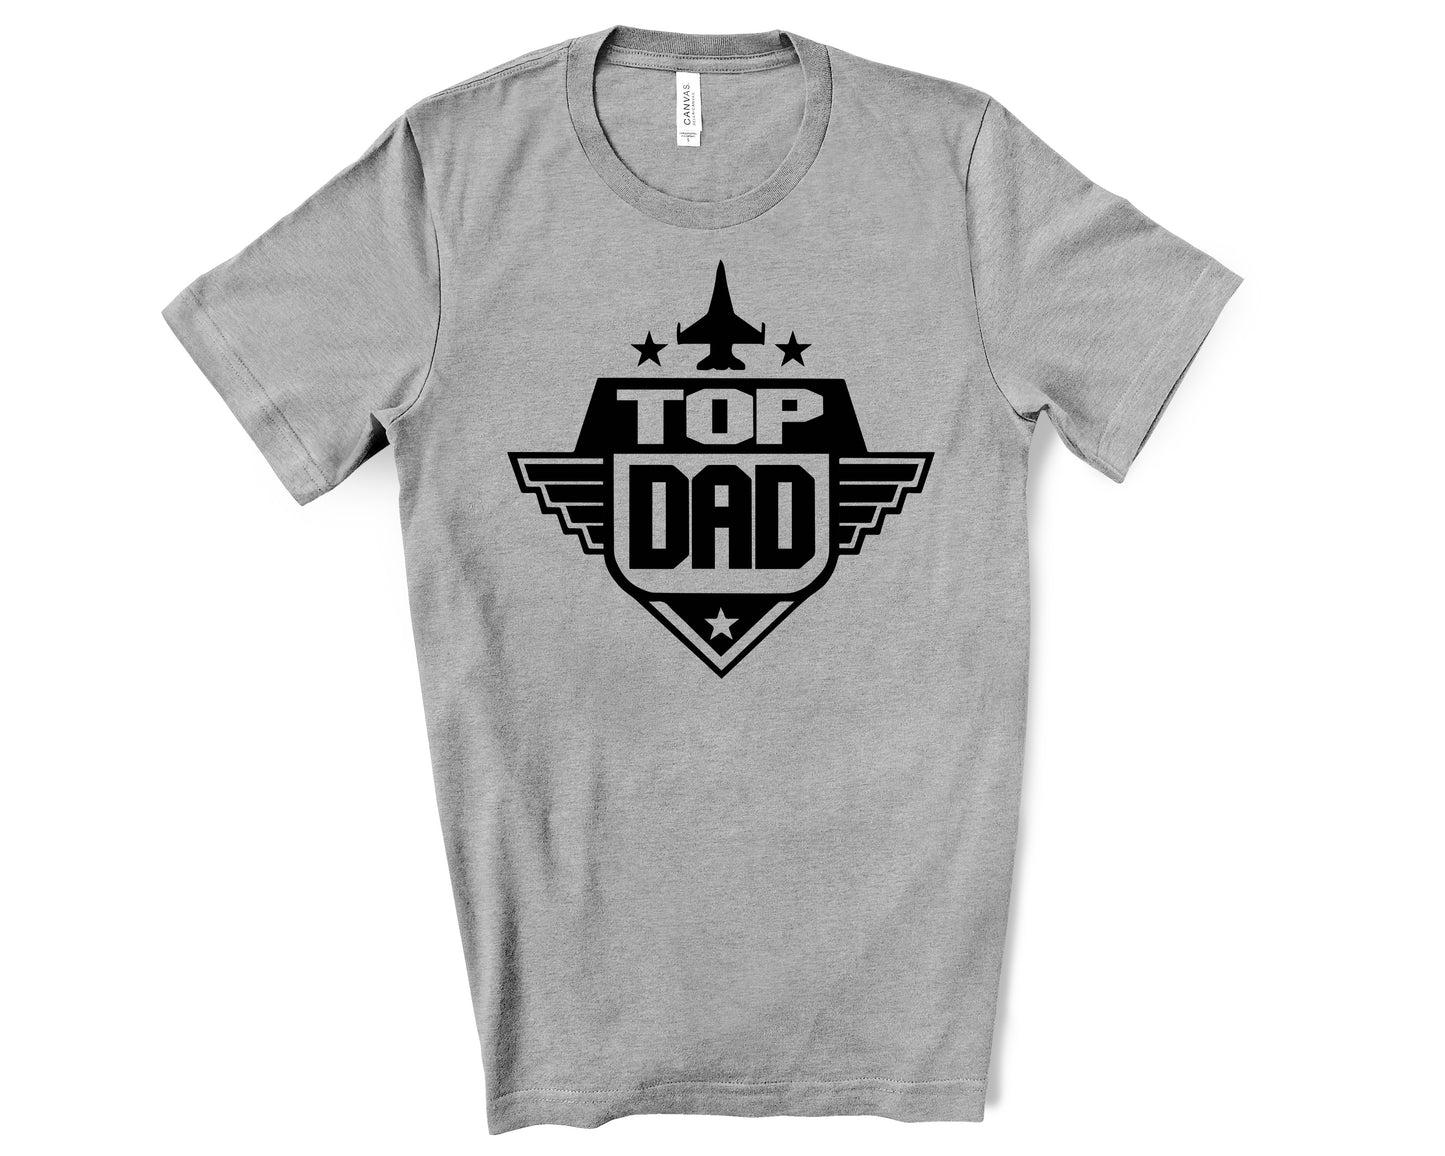 Top Gun Dad Shirt